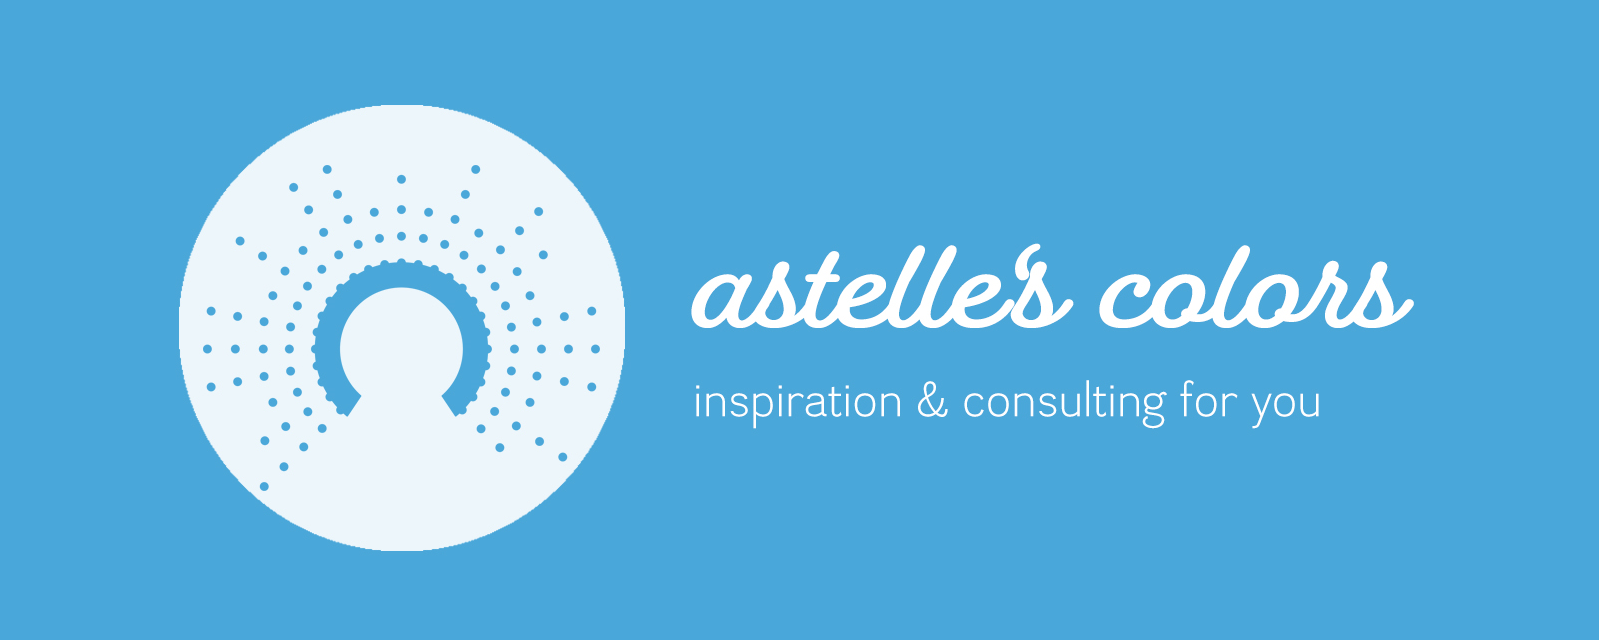 astelle's colors logo